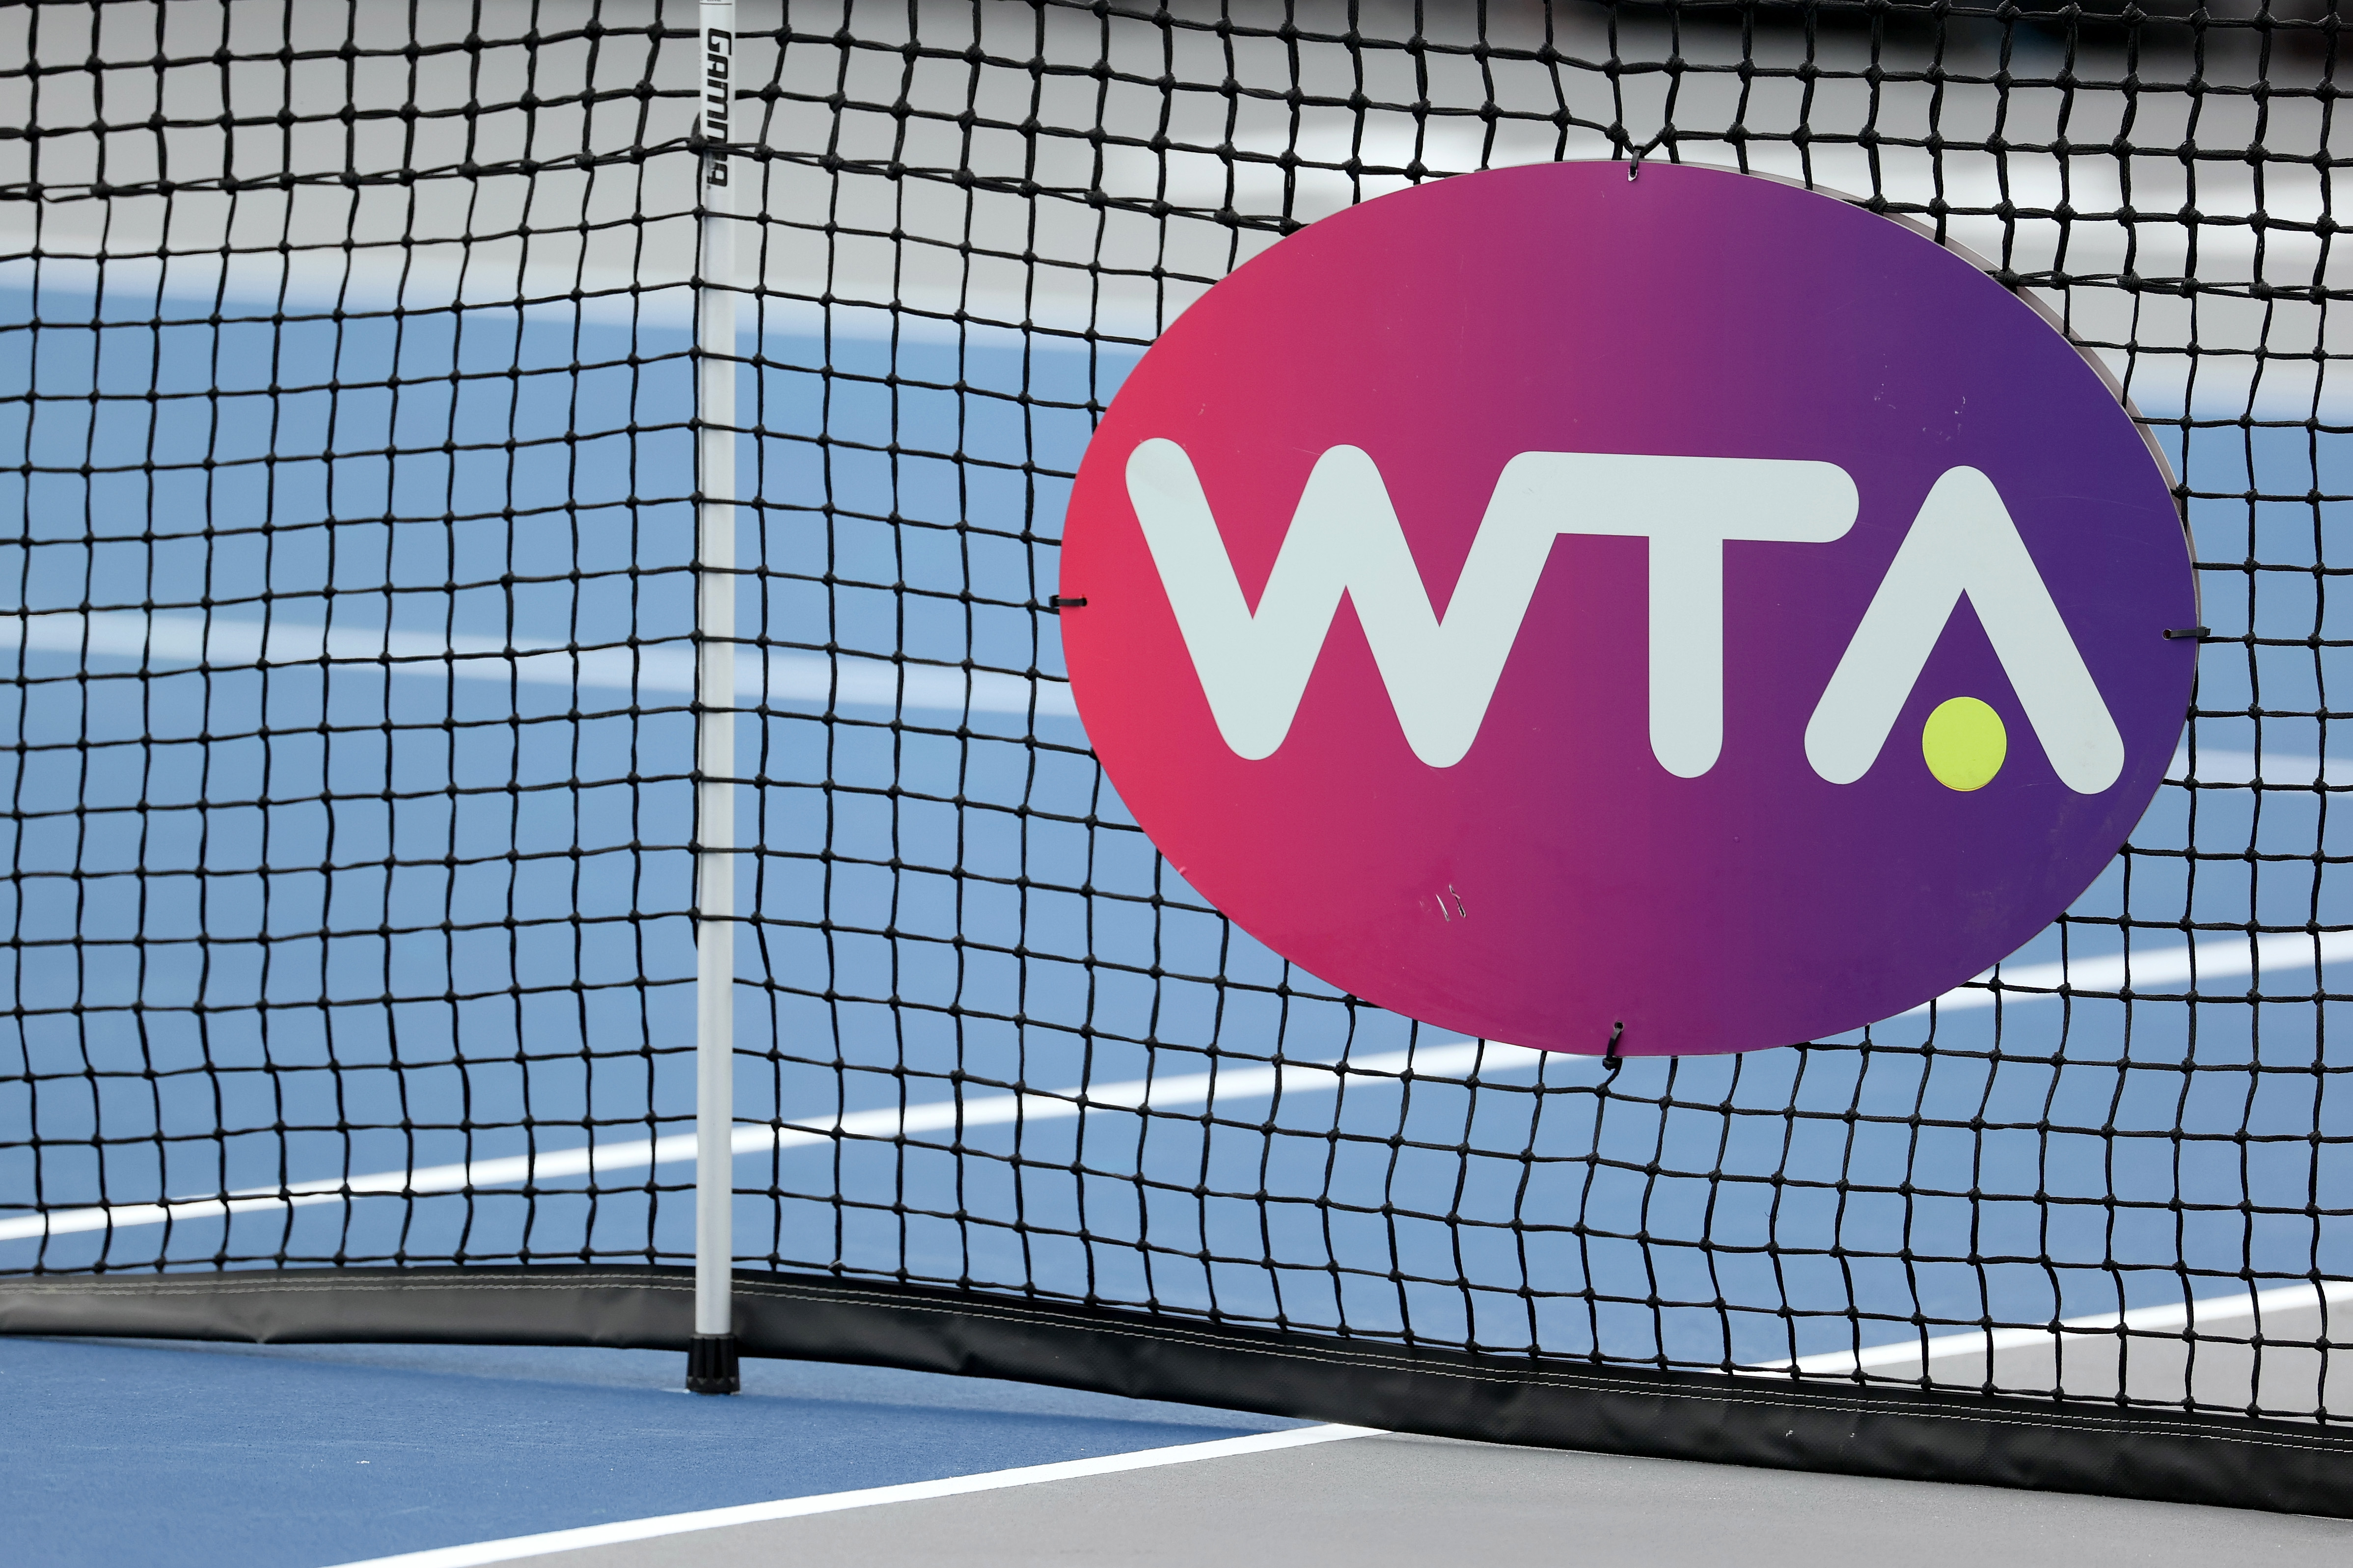 WTA consideră excluderea sportivilor din Rusia şi Belarus de la Wimbledon drept nedreaptă şi nejustificată